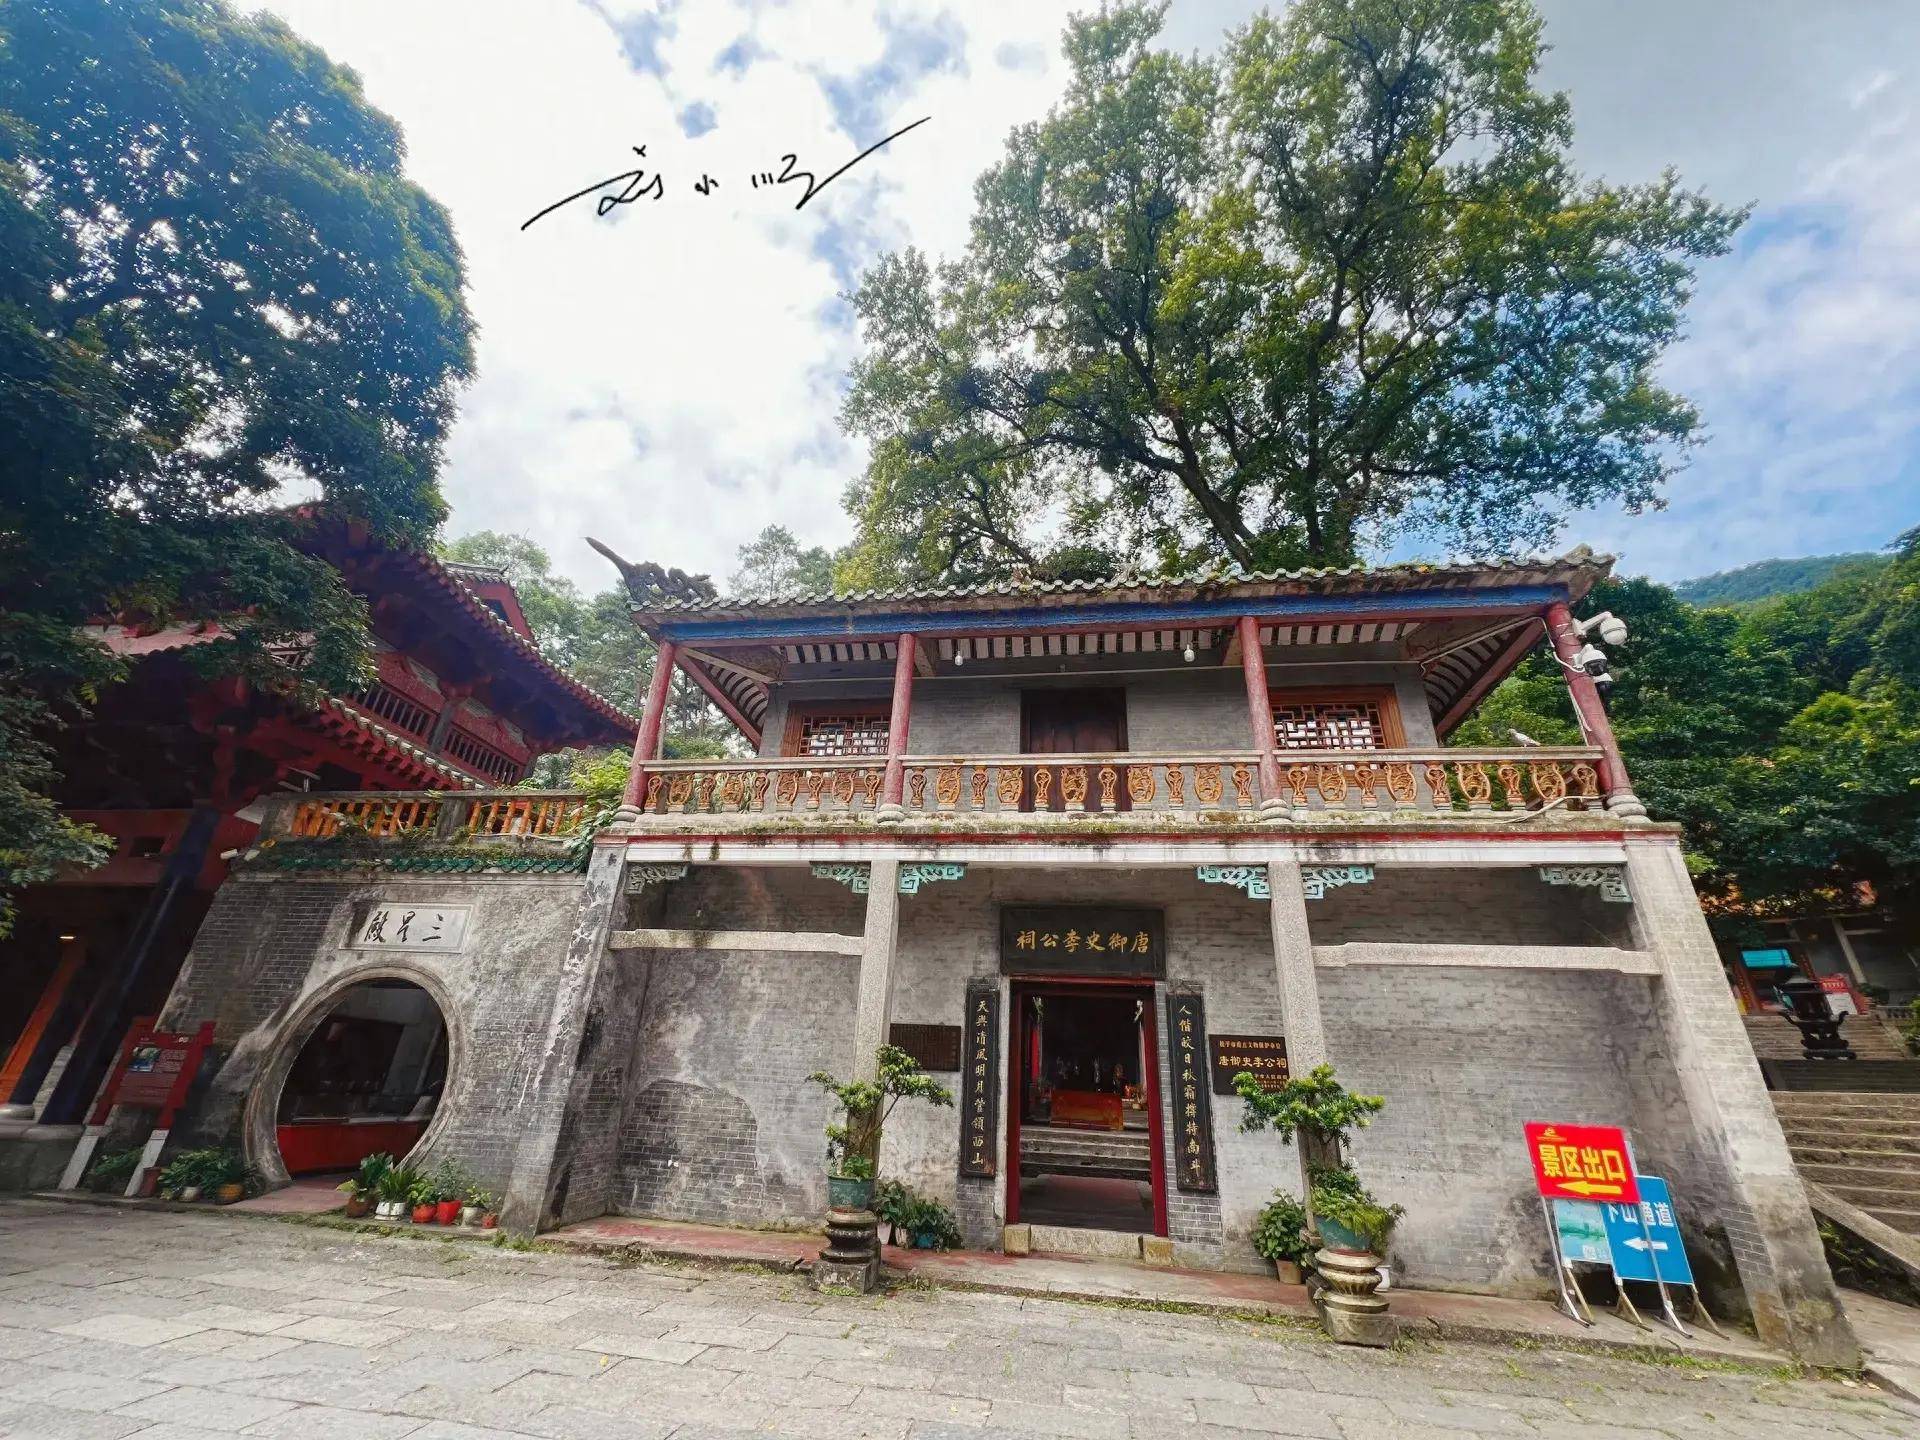 广西桂平有个4a级景区,被誉为南天第一秀,还是著名佛教圣地